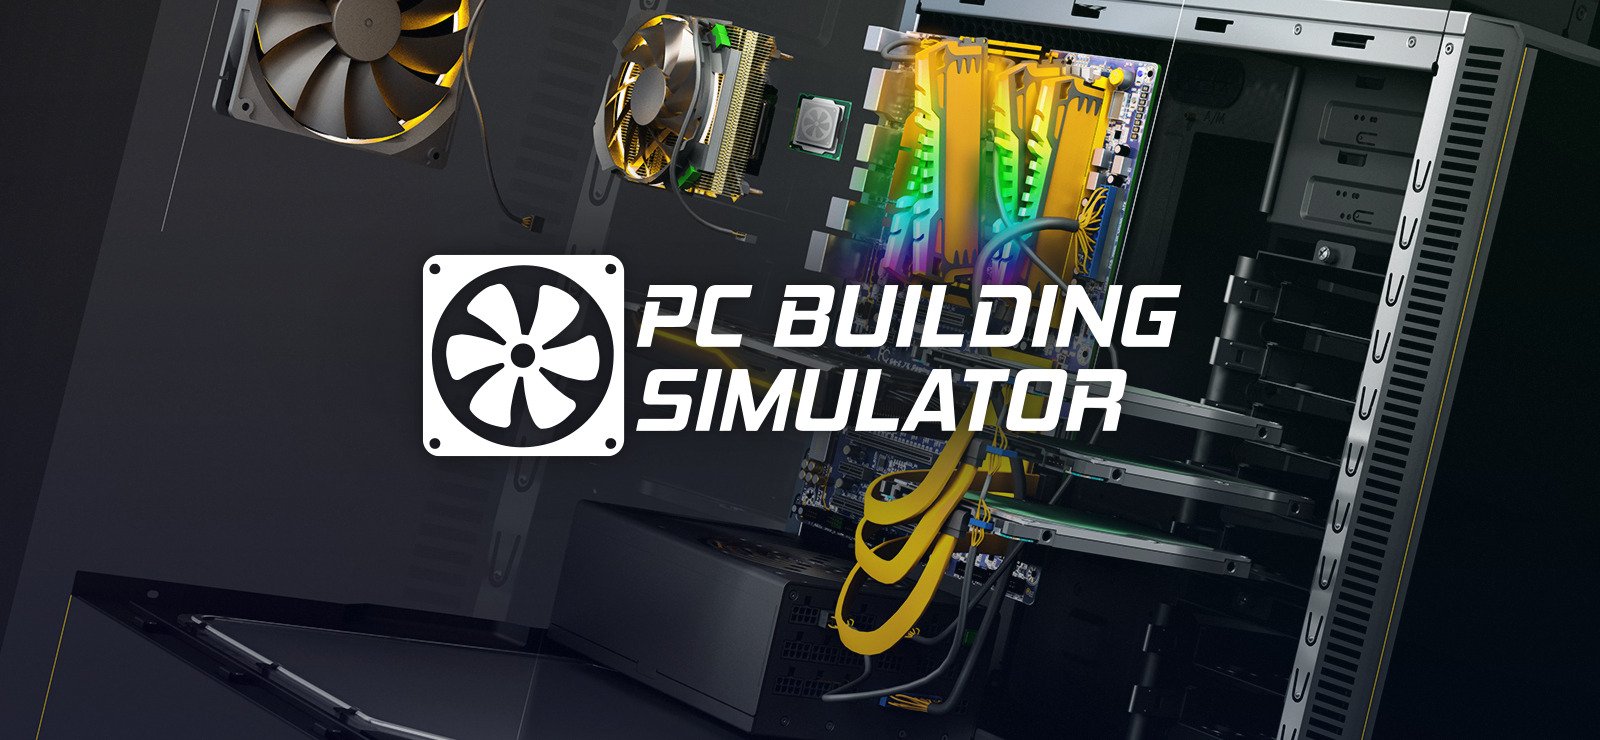 60% PC Building Simulator on GOG.com